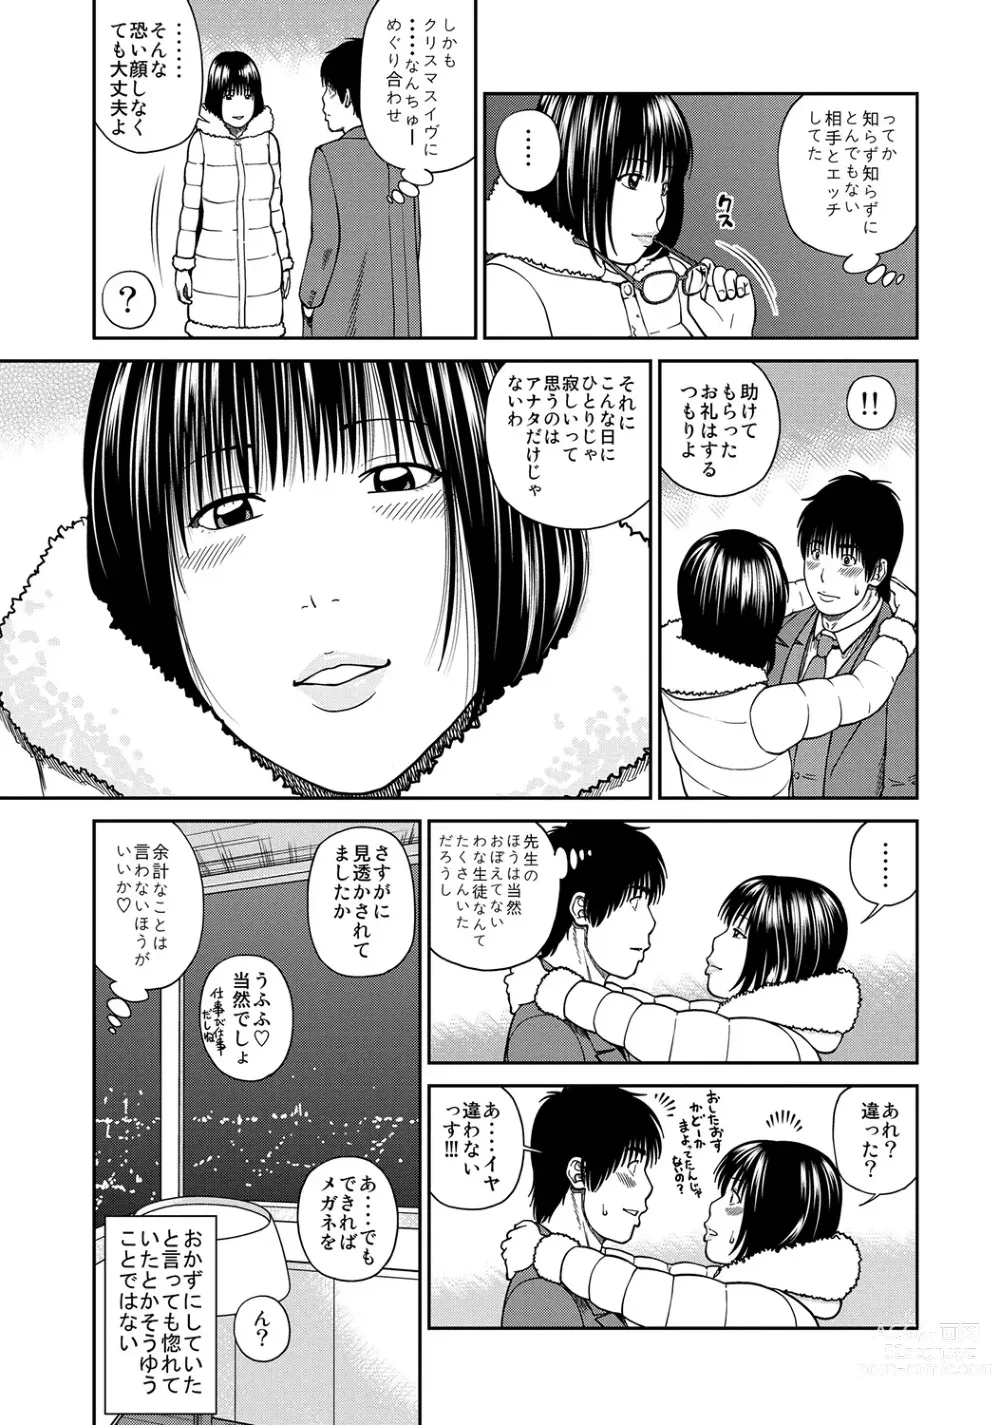 Page 12 of manga WEB Ban COMIC Gekiyaba! Vol. 45